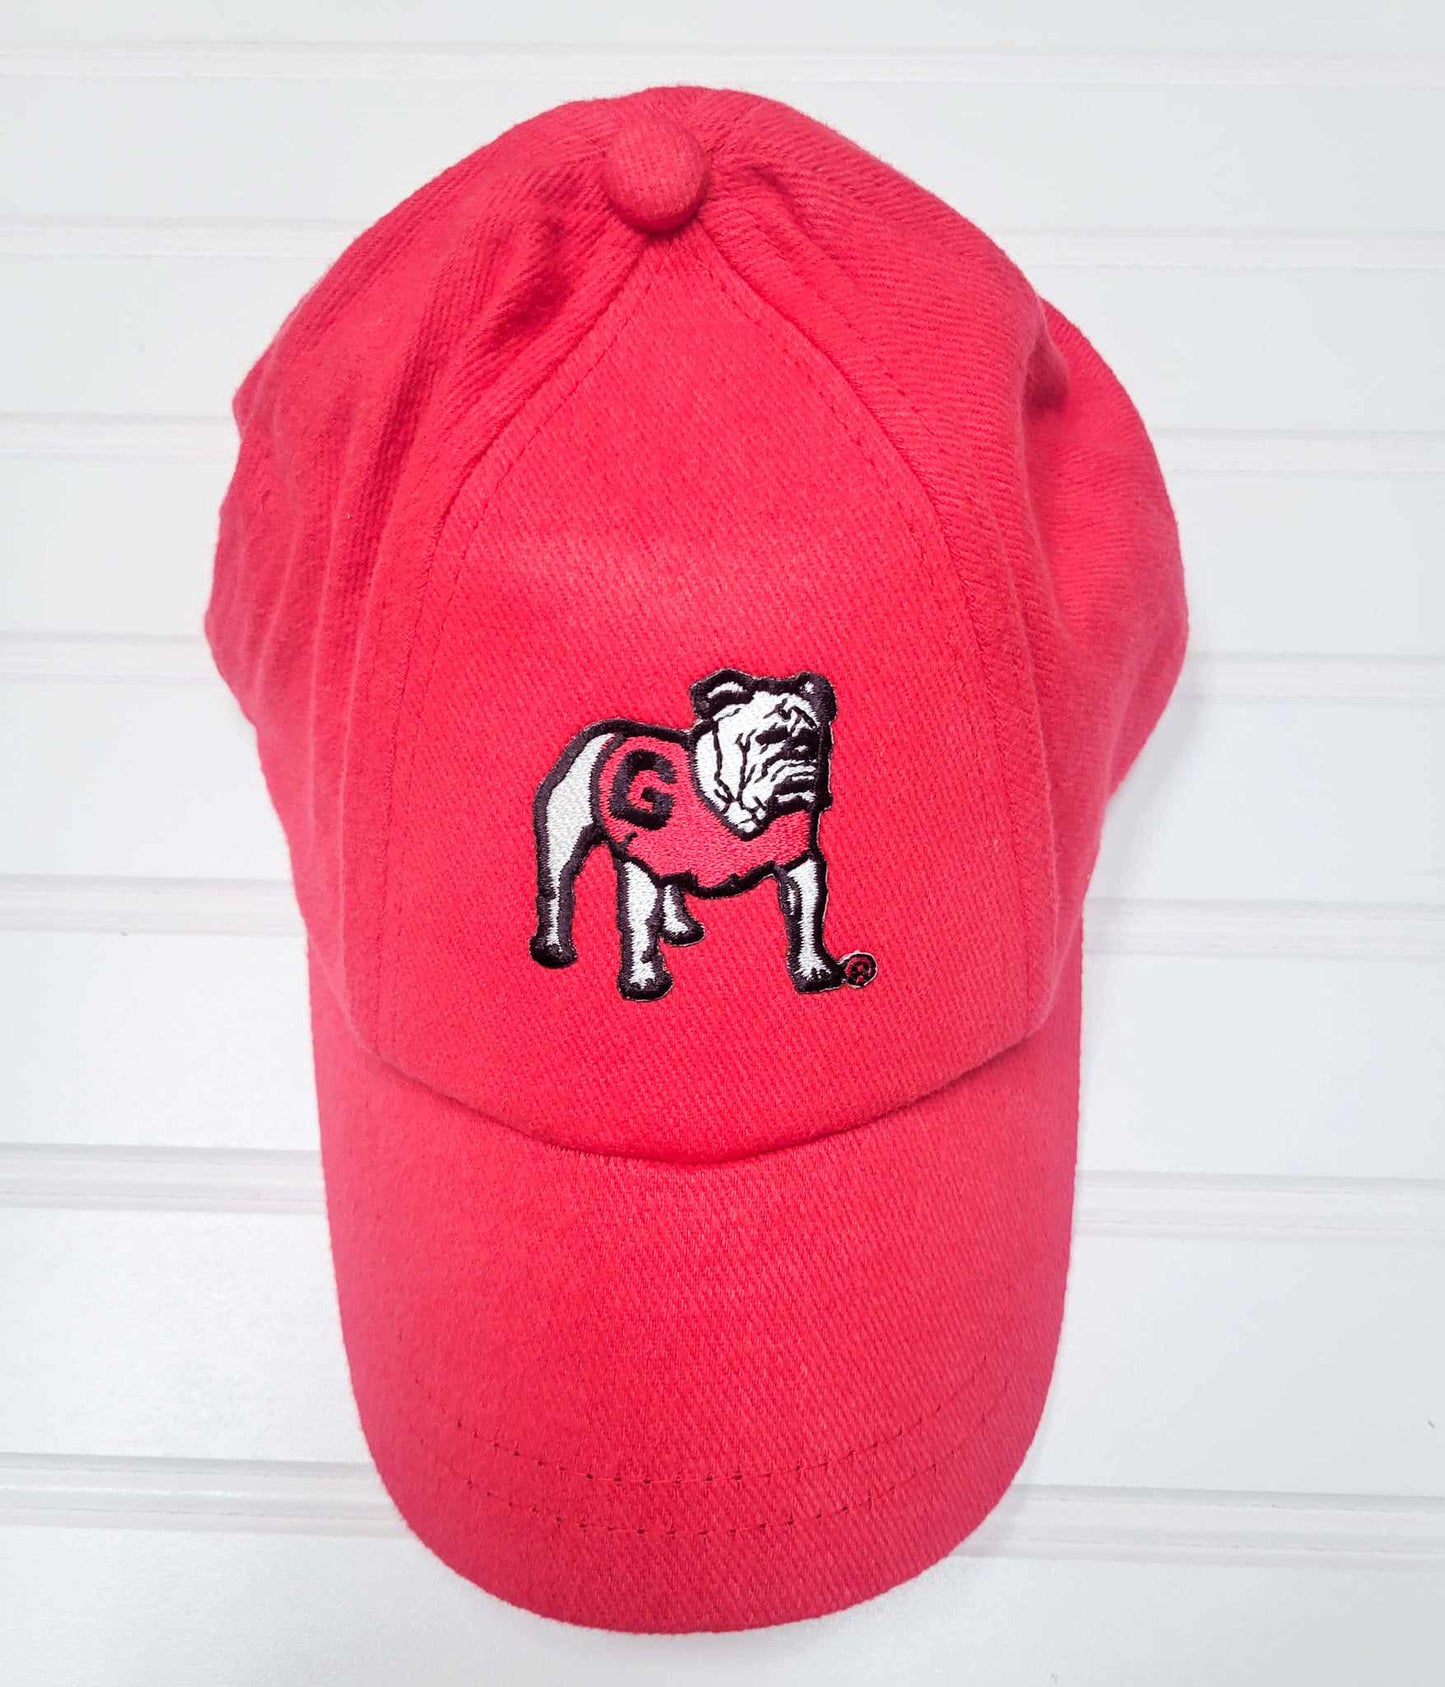 UGA Baseball Cap - Red